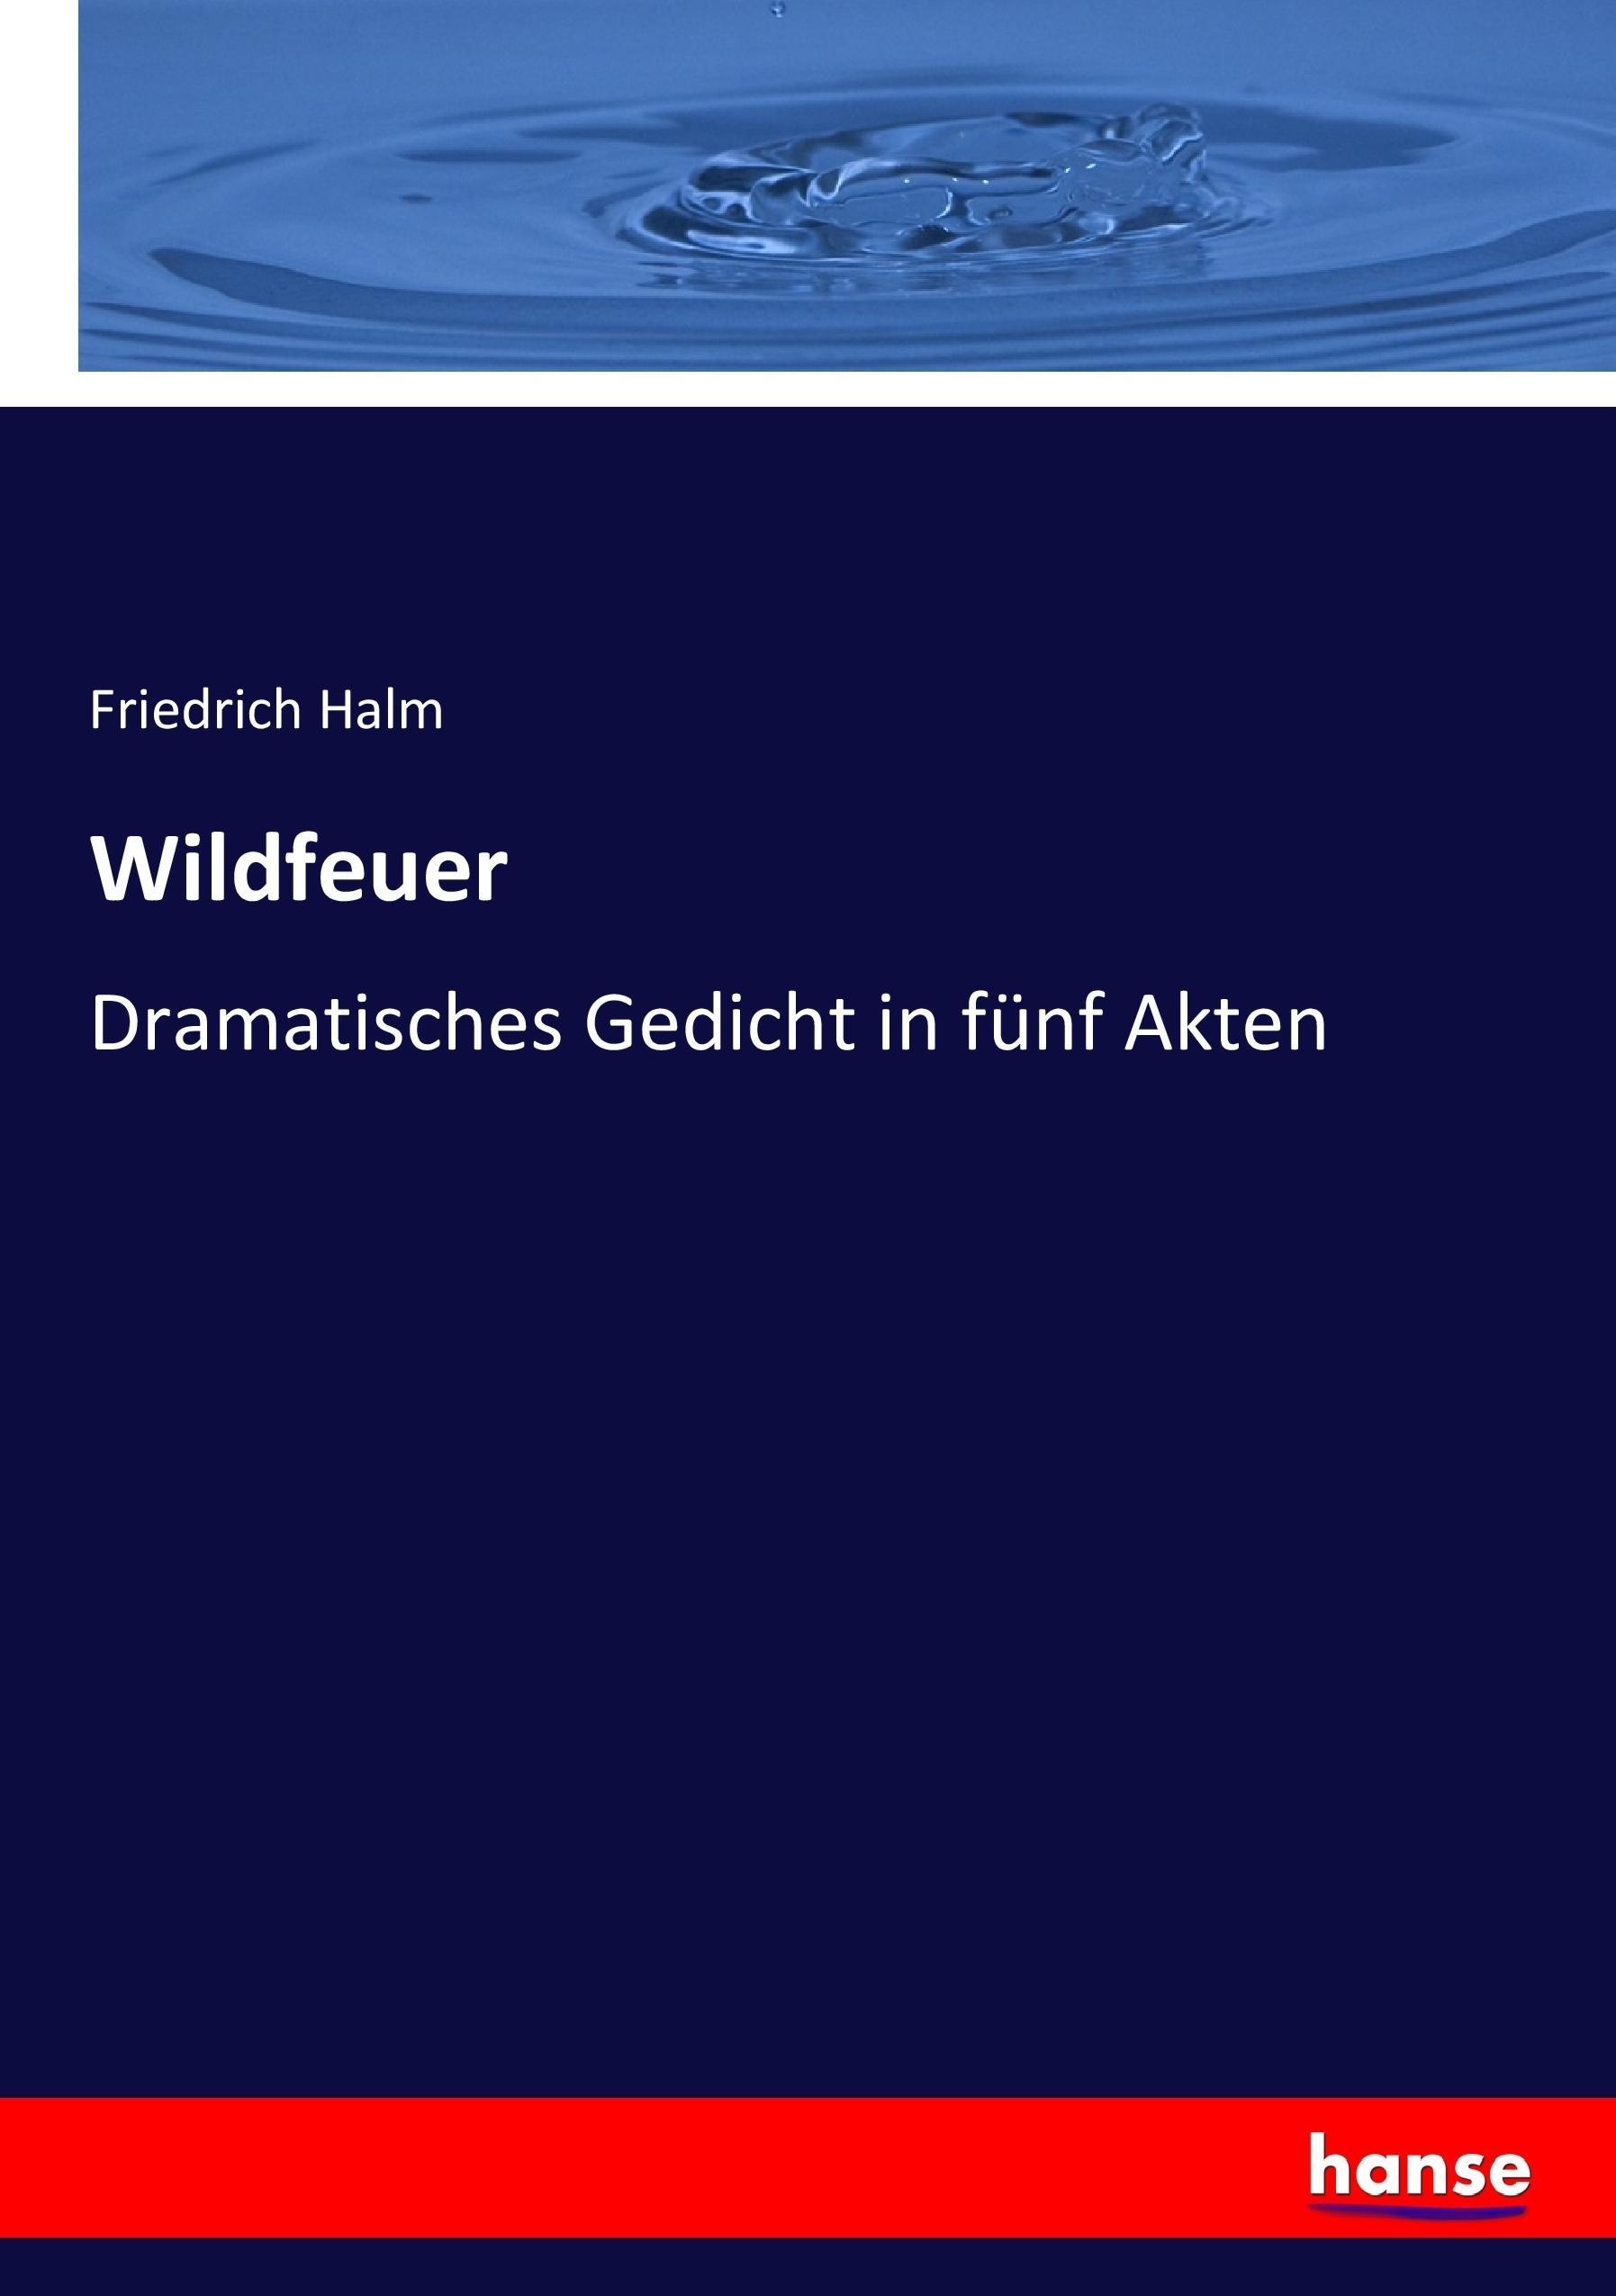 Wildfeuer | Dramatisches Gedicht in fünf Akten | Friedrich Halm | Taschenbuch | Paperback | 156 S. | Deutsch | 2017 | hansebooks | EAN 9783743677036 - Halm, Friedrich